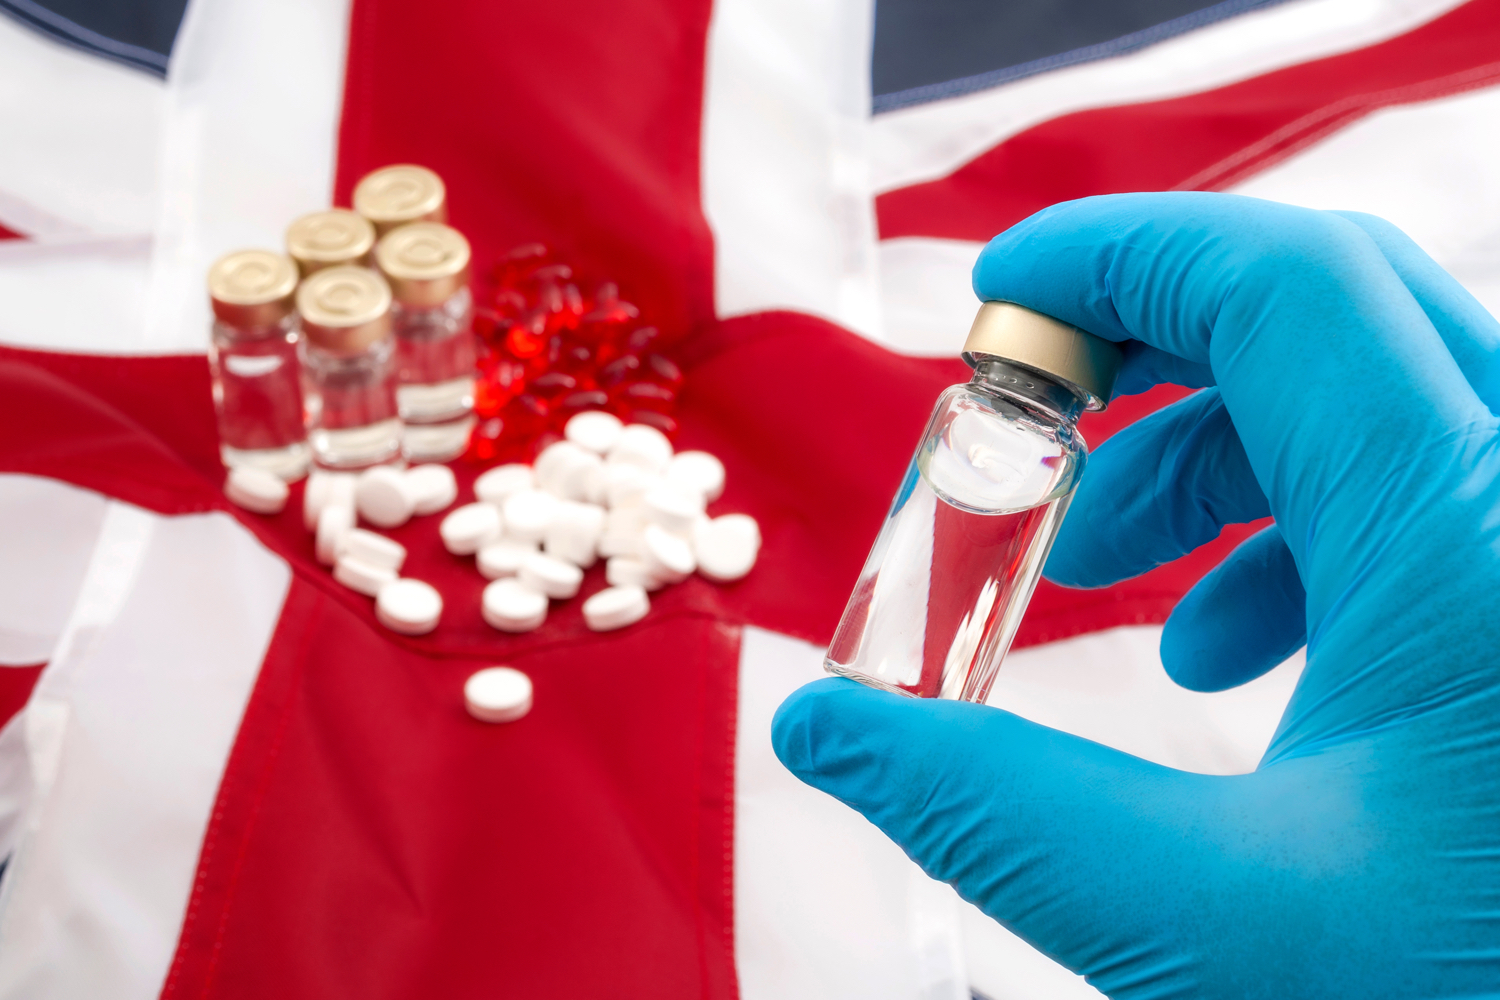 Правительство Великобритании призвало поставщиков нарастить запасы лекарств - Фото